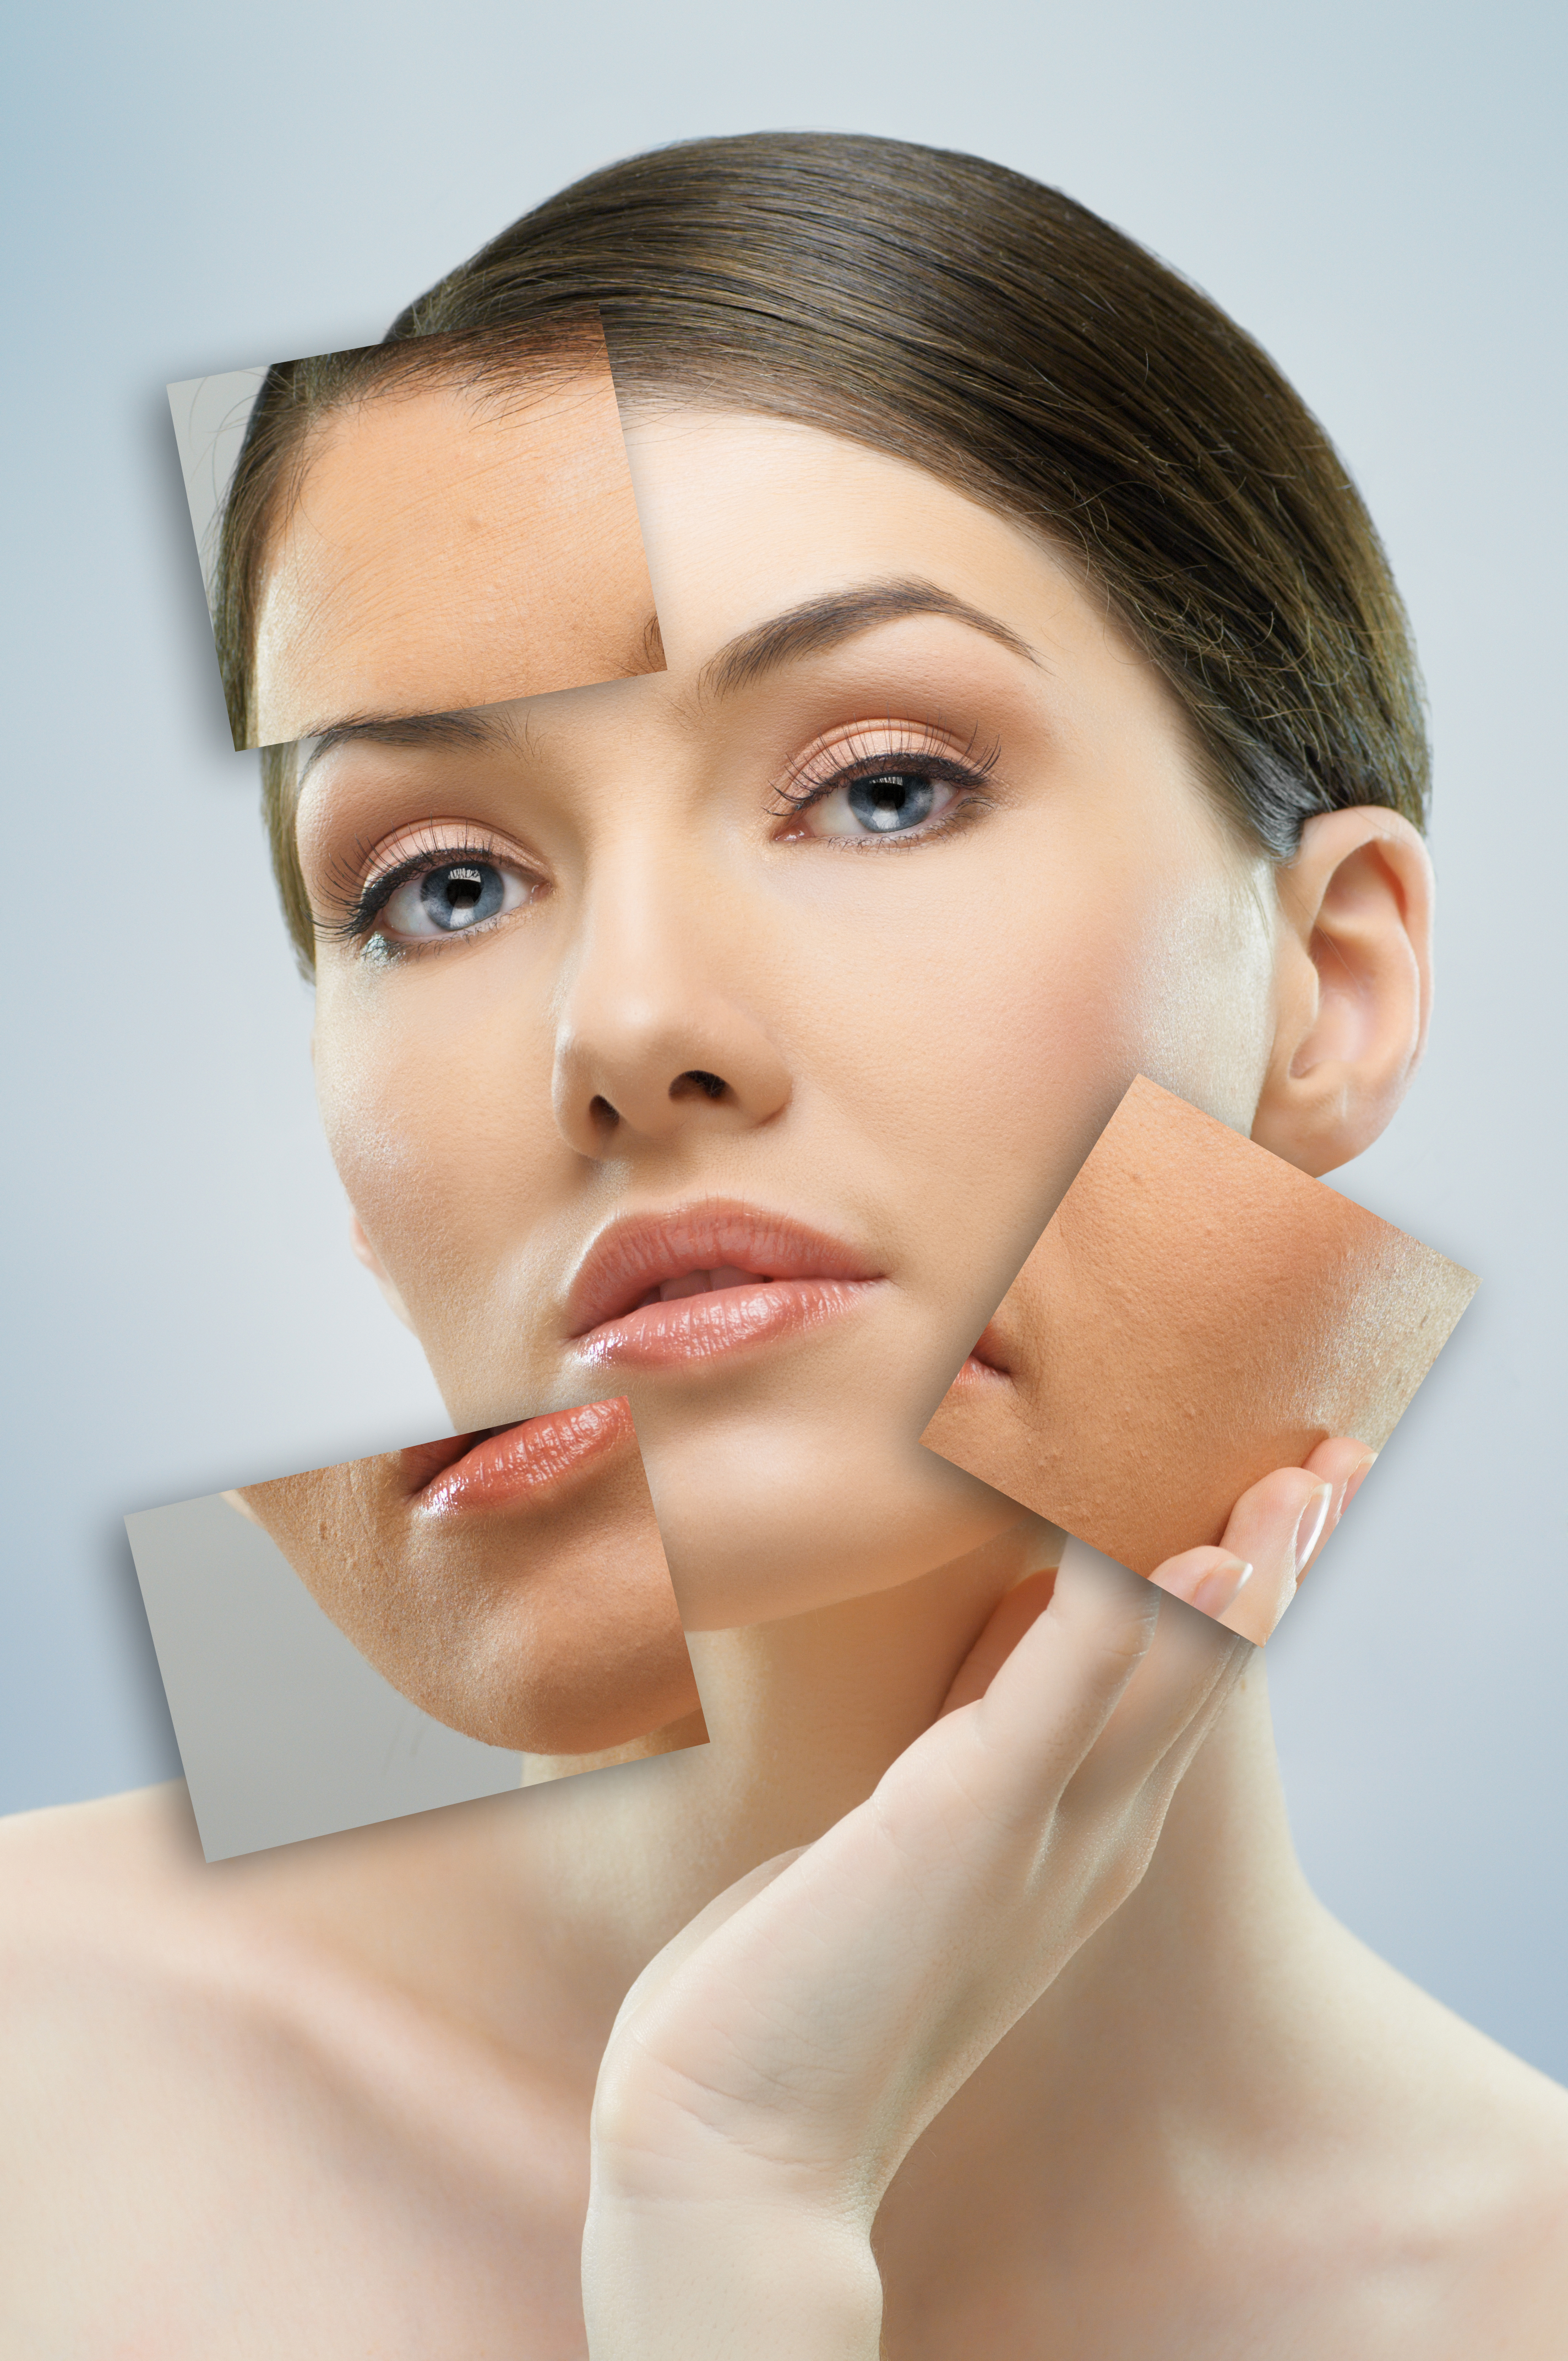 Microdermabrasion vs. Laser Skin Facial Rejuvenation ...